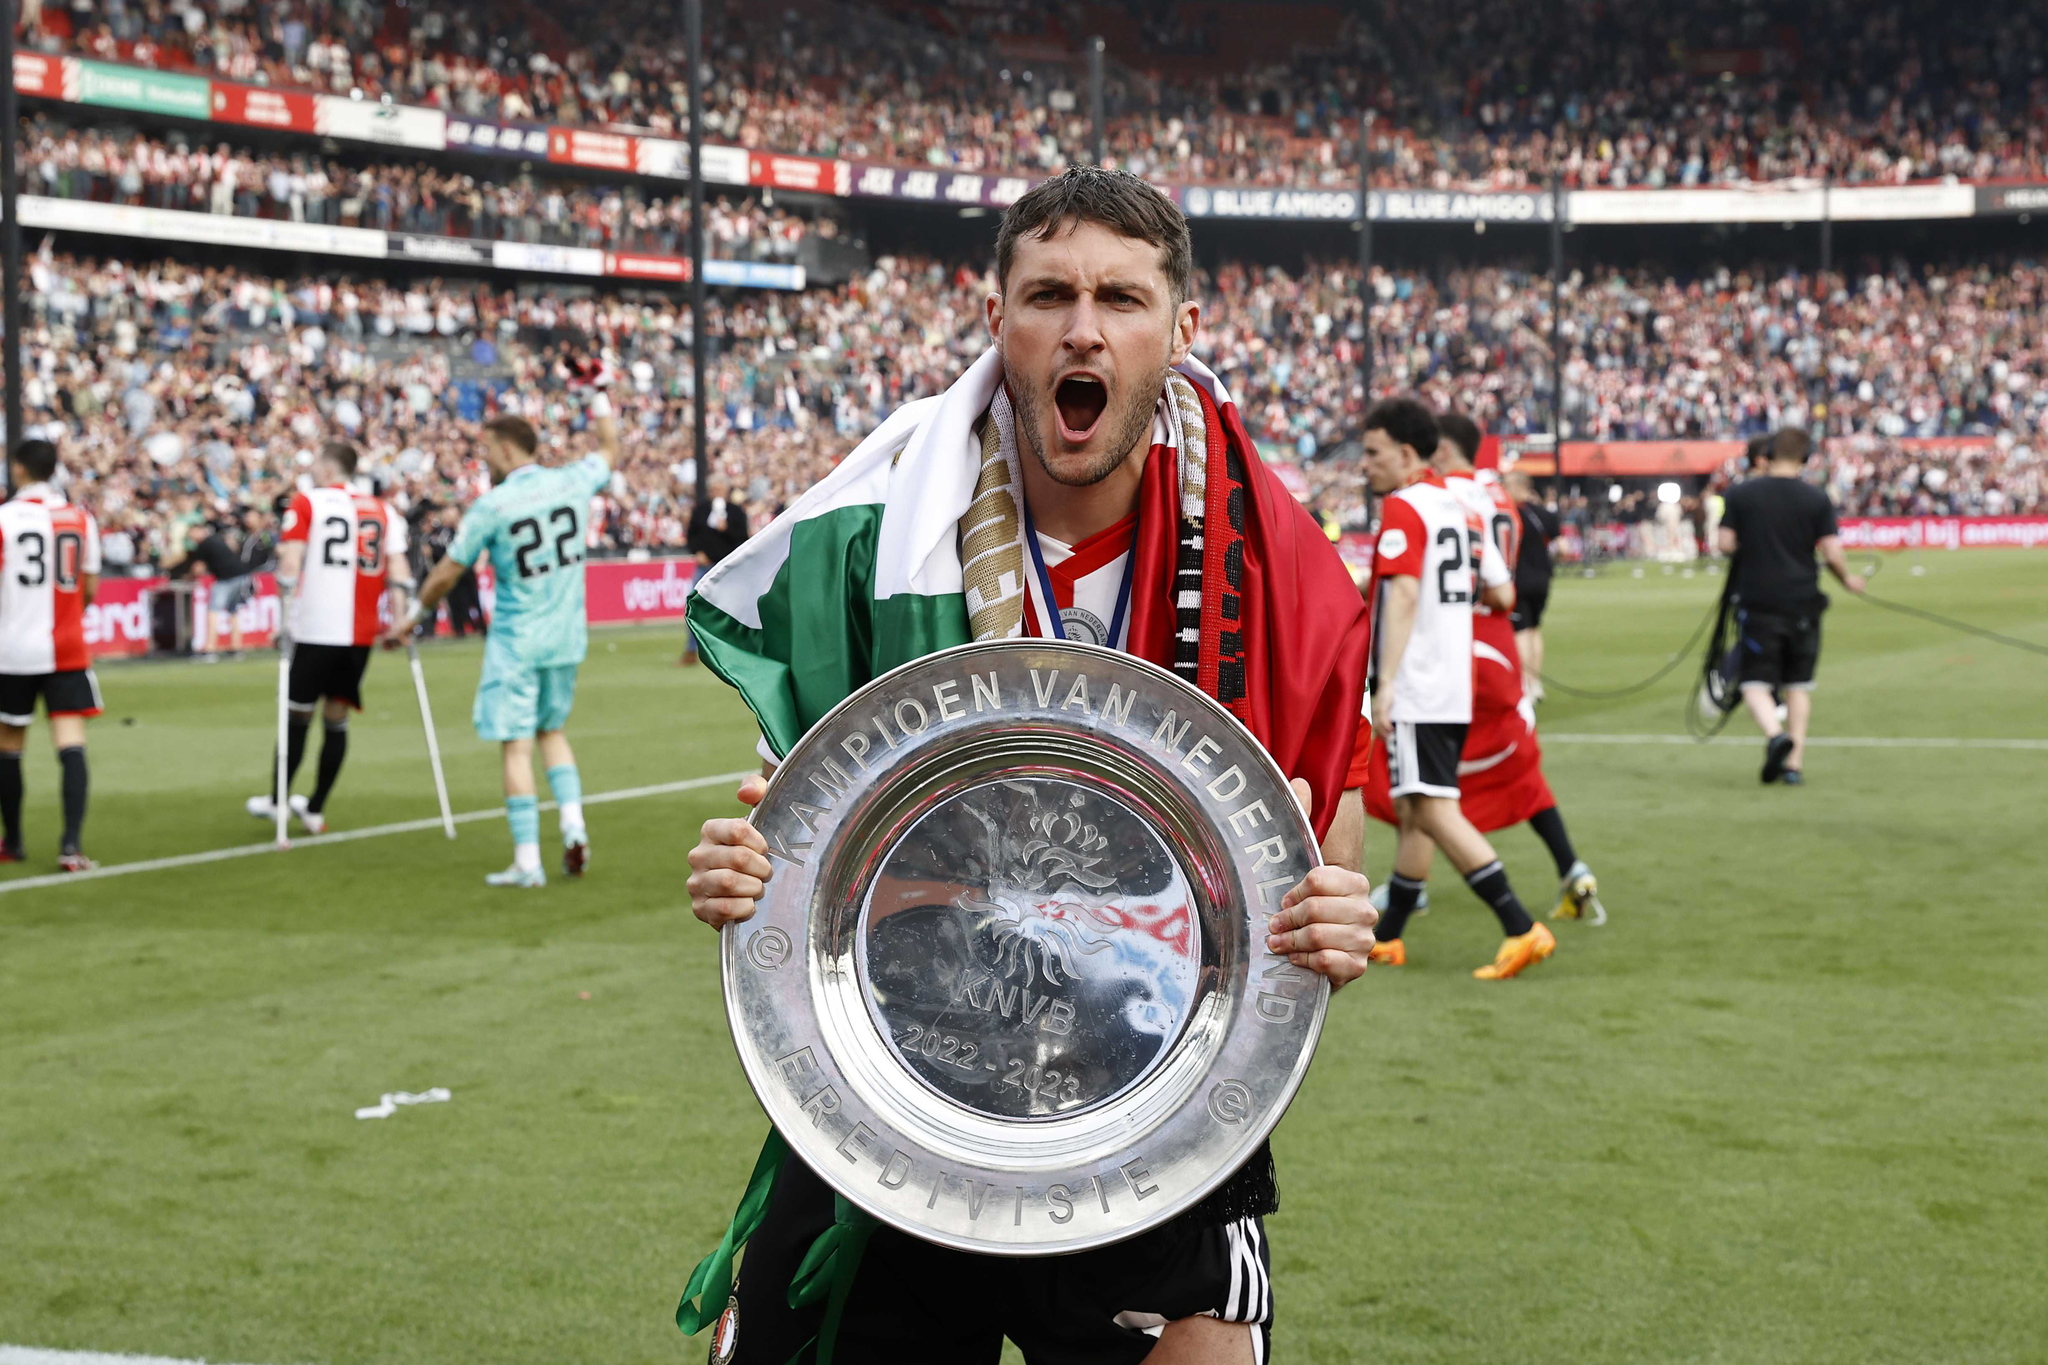 Santiago Gimnez celebra el campeonato de la Eredivisie al terminar el partido del Feyenoord contra Go Ahead Eagles